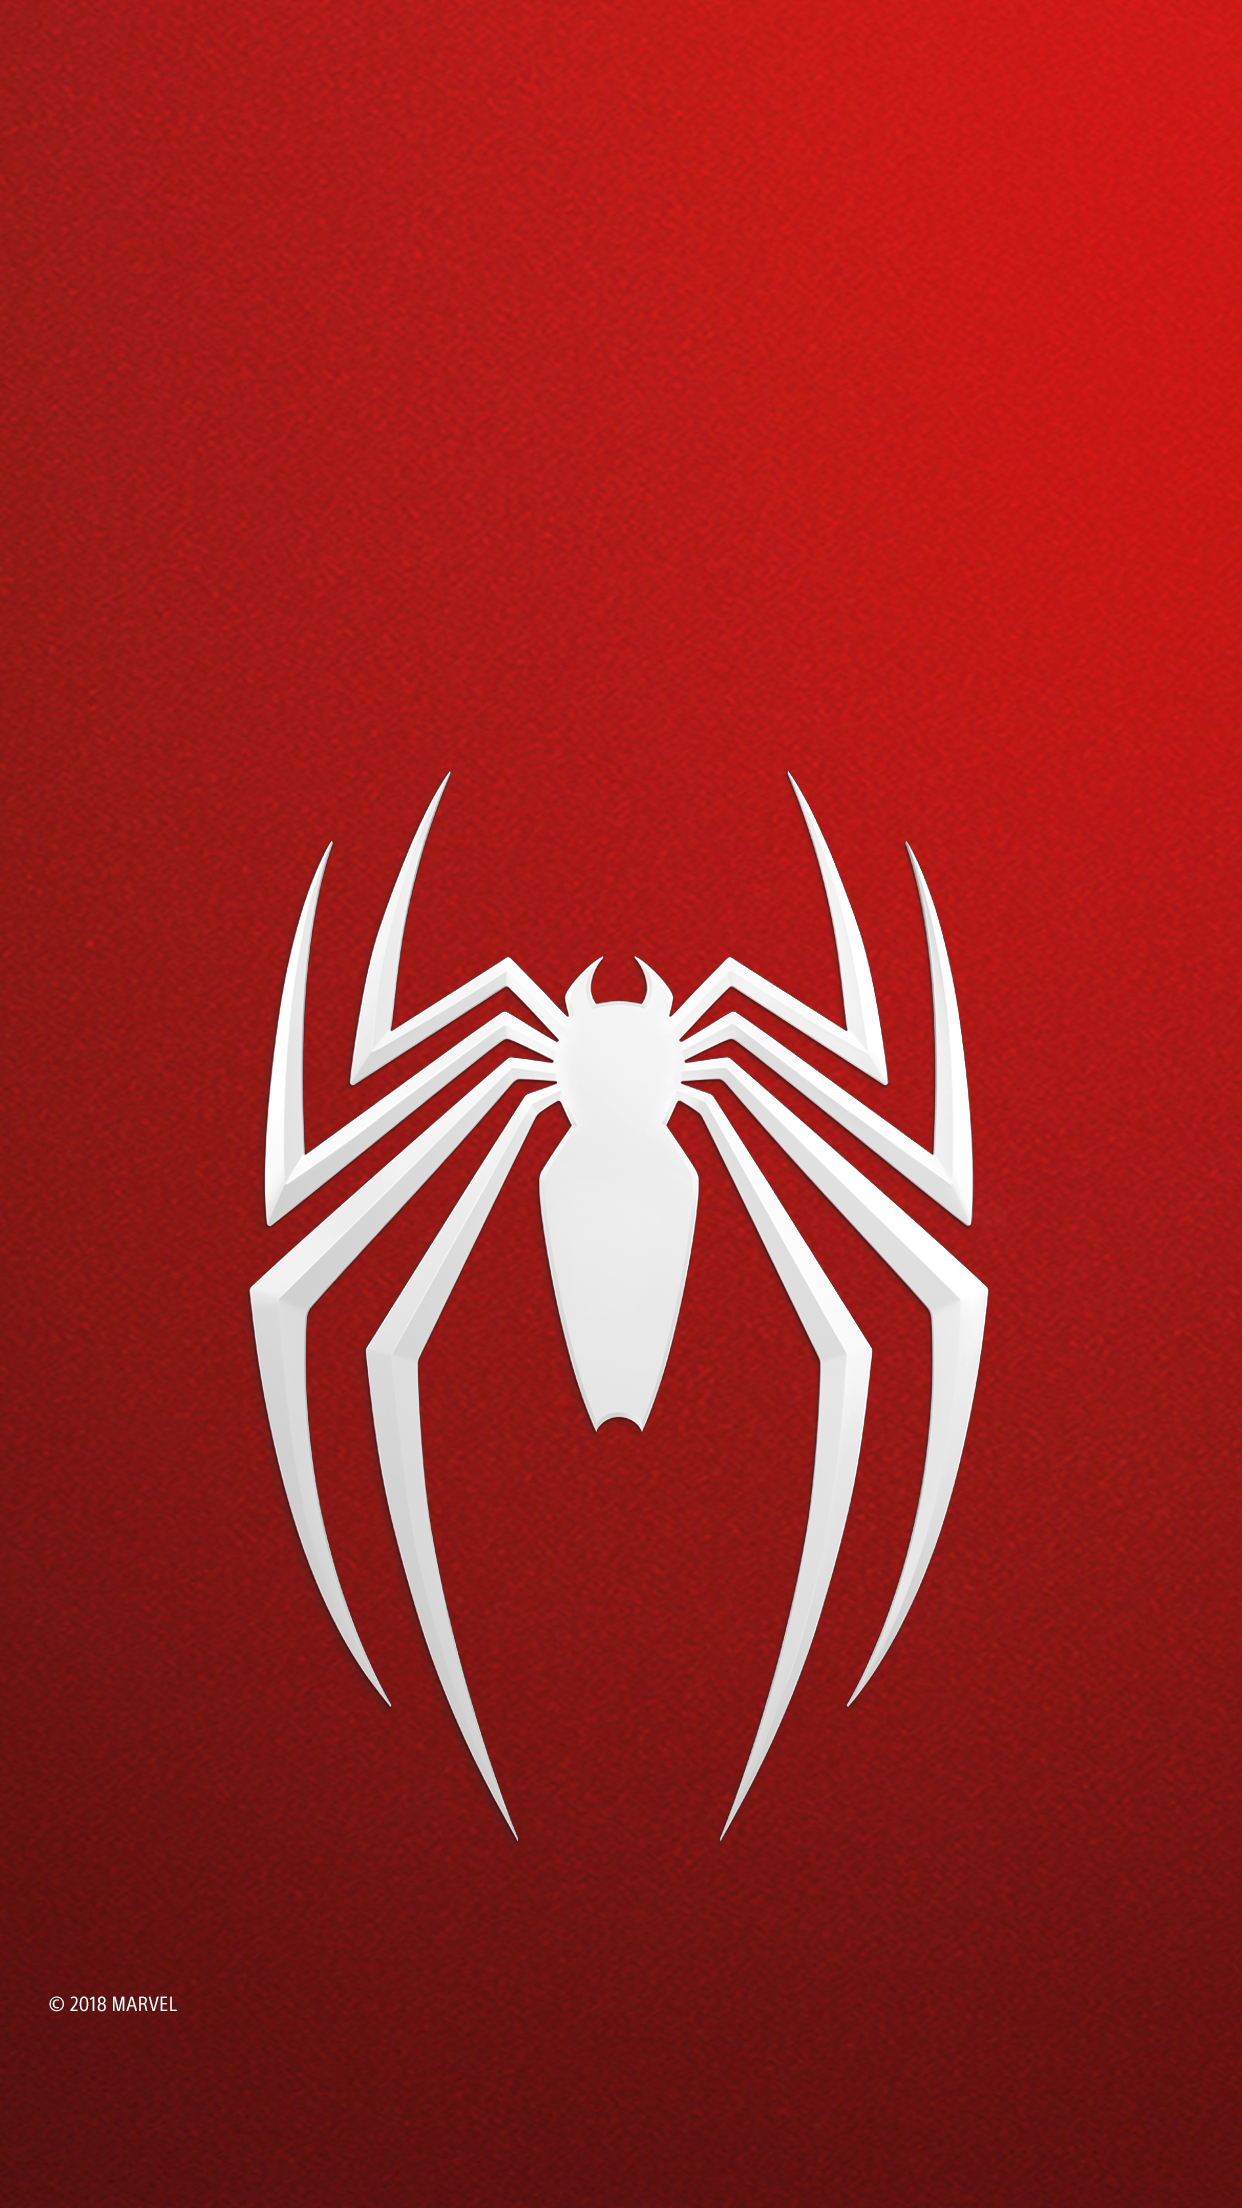 fondo de pantalla para móvil de marvel's spider-man